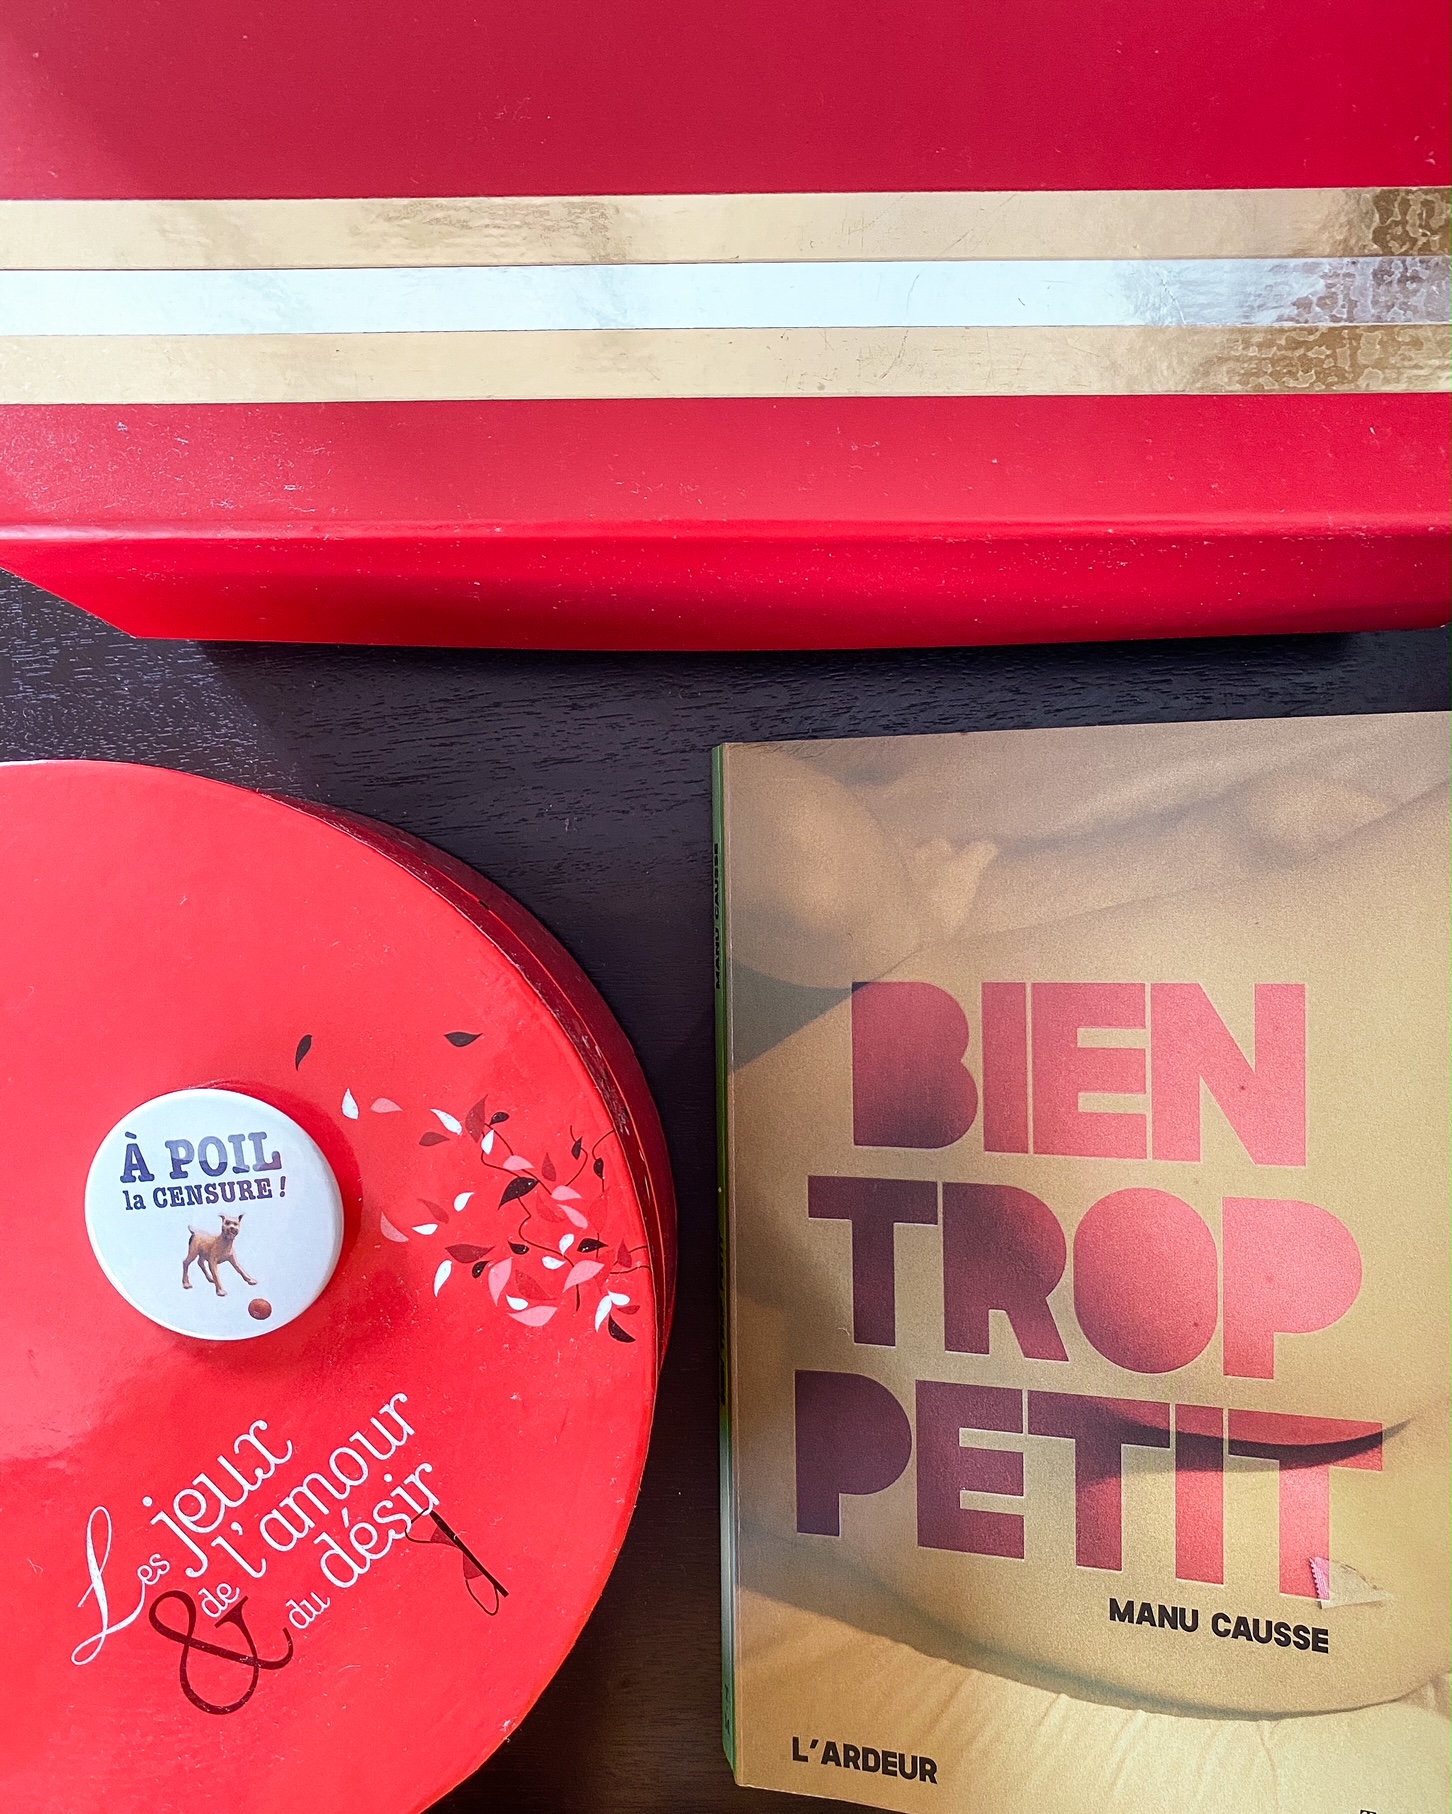 Photographie du livre "un problème de taille" de Manu Causse ; à sa gauche une boîte ronde rouge avec écrit "les jeux de l'amour et du désir", sur laquelle est posé un badge rond "A poli la censure" ; en haut, une boîte rouge rayée de doré et argenté